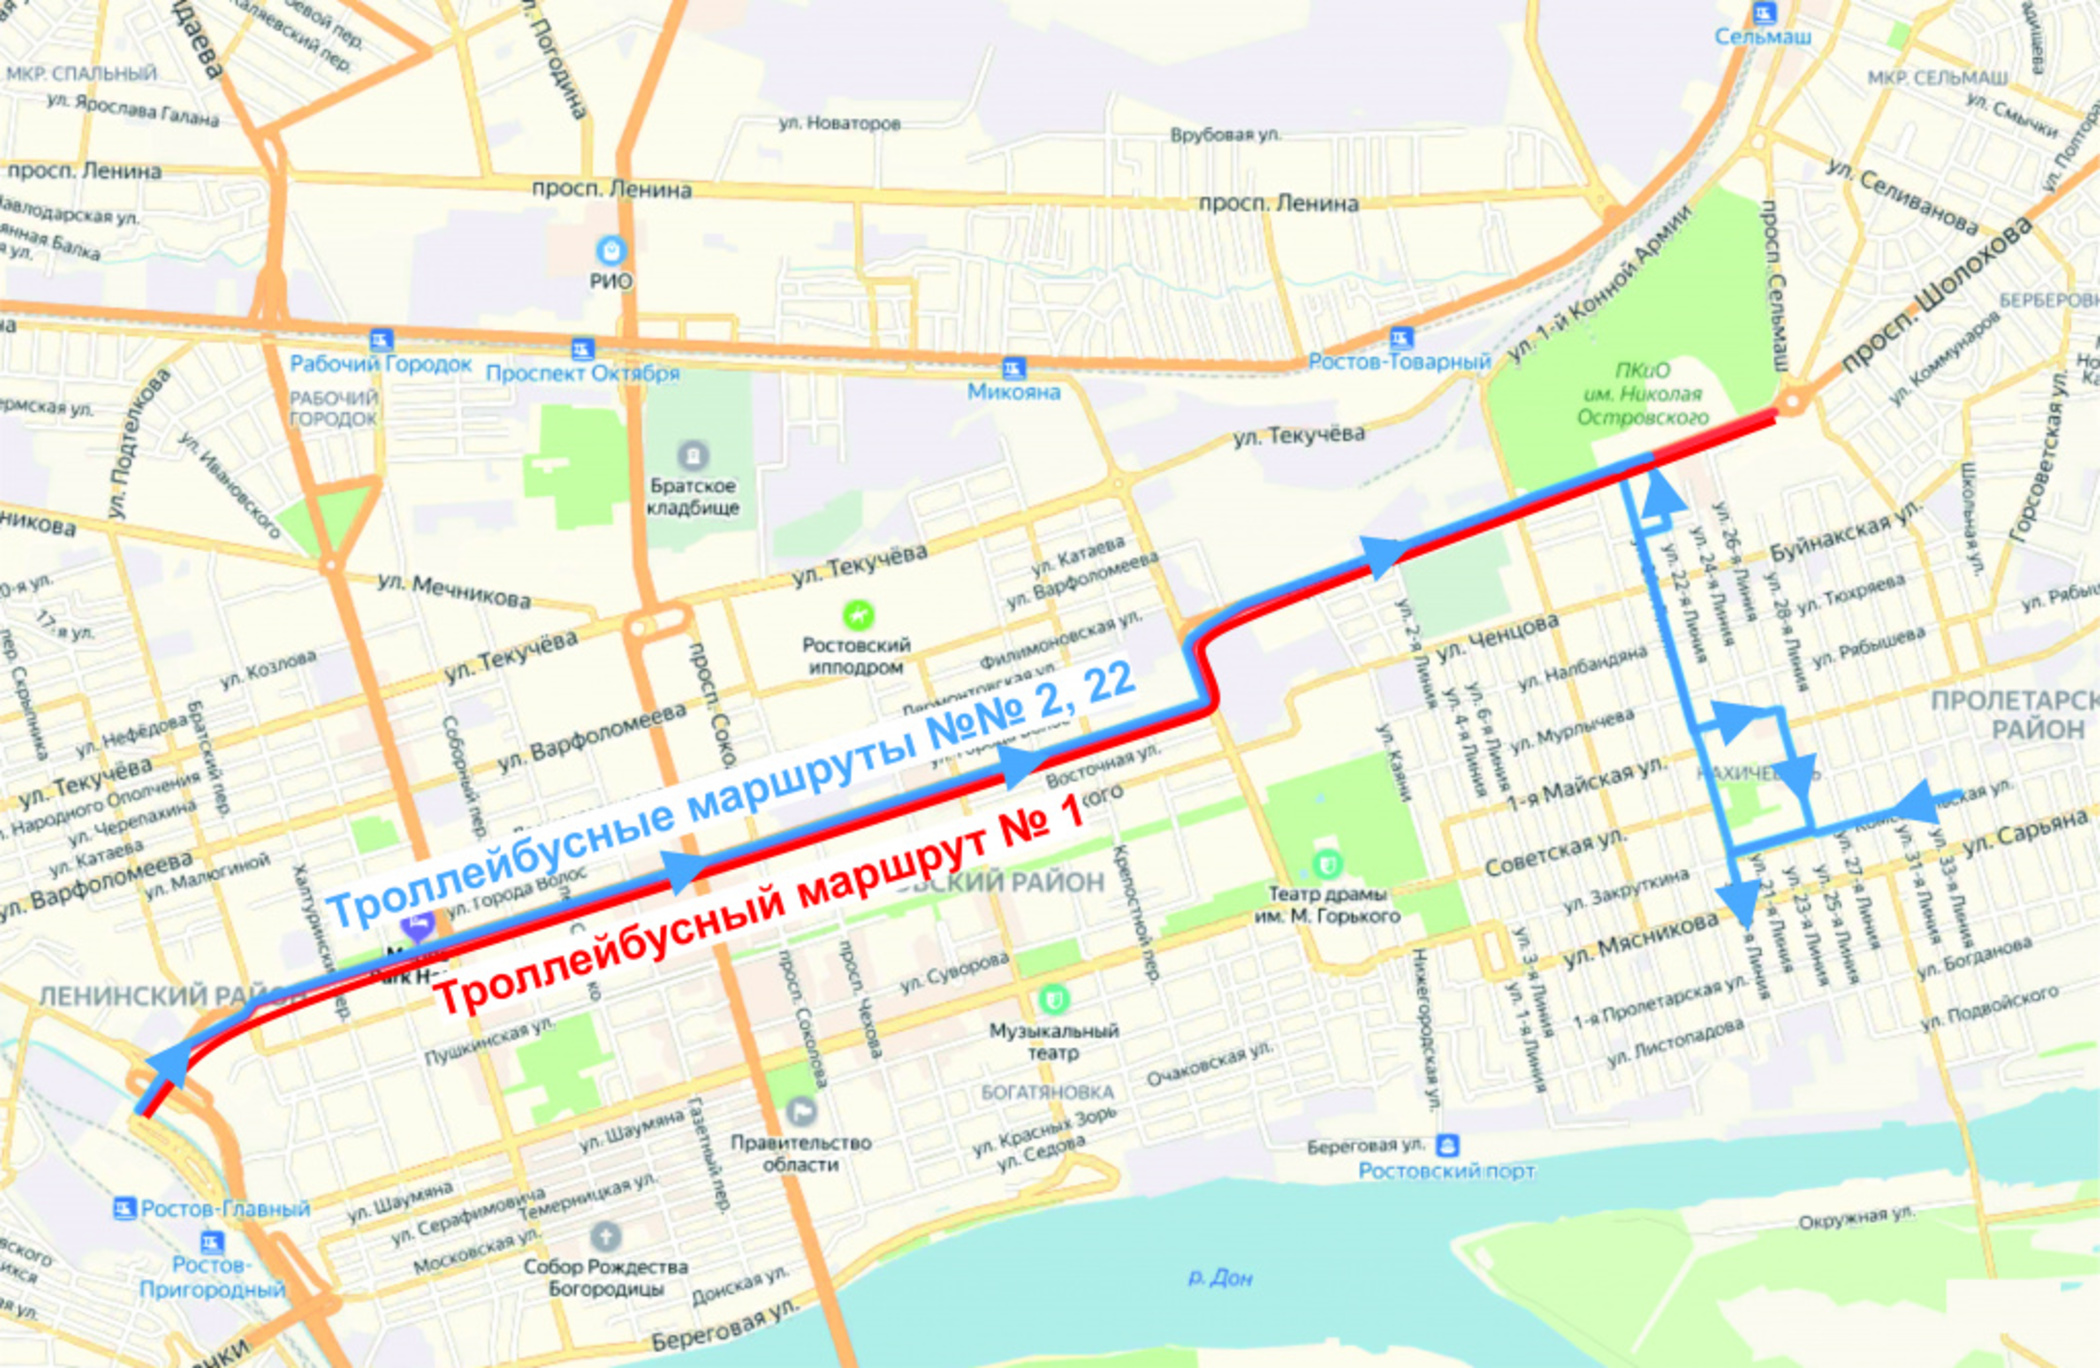 Схема общественного транспорта Ростова-на-Дону